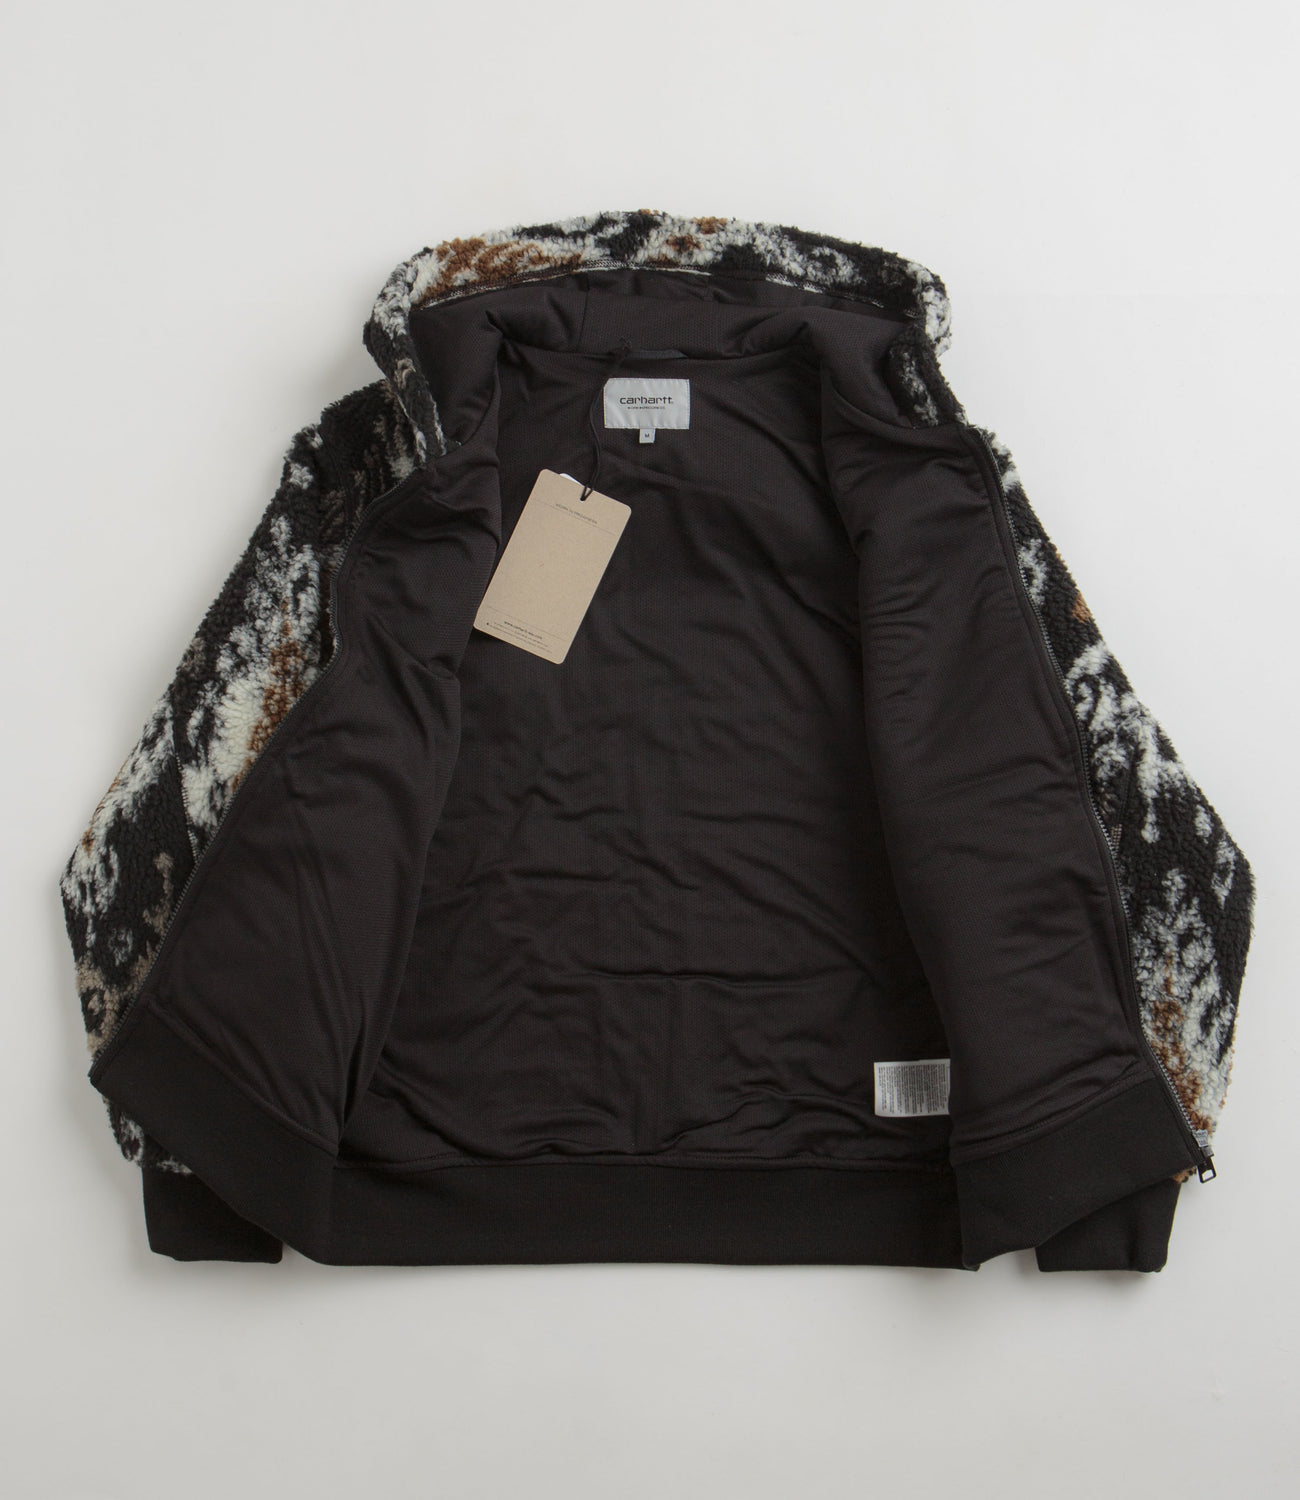 Carhartt OG Active Liner Fleece - Baru Jacquard / Black